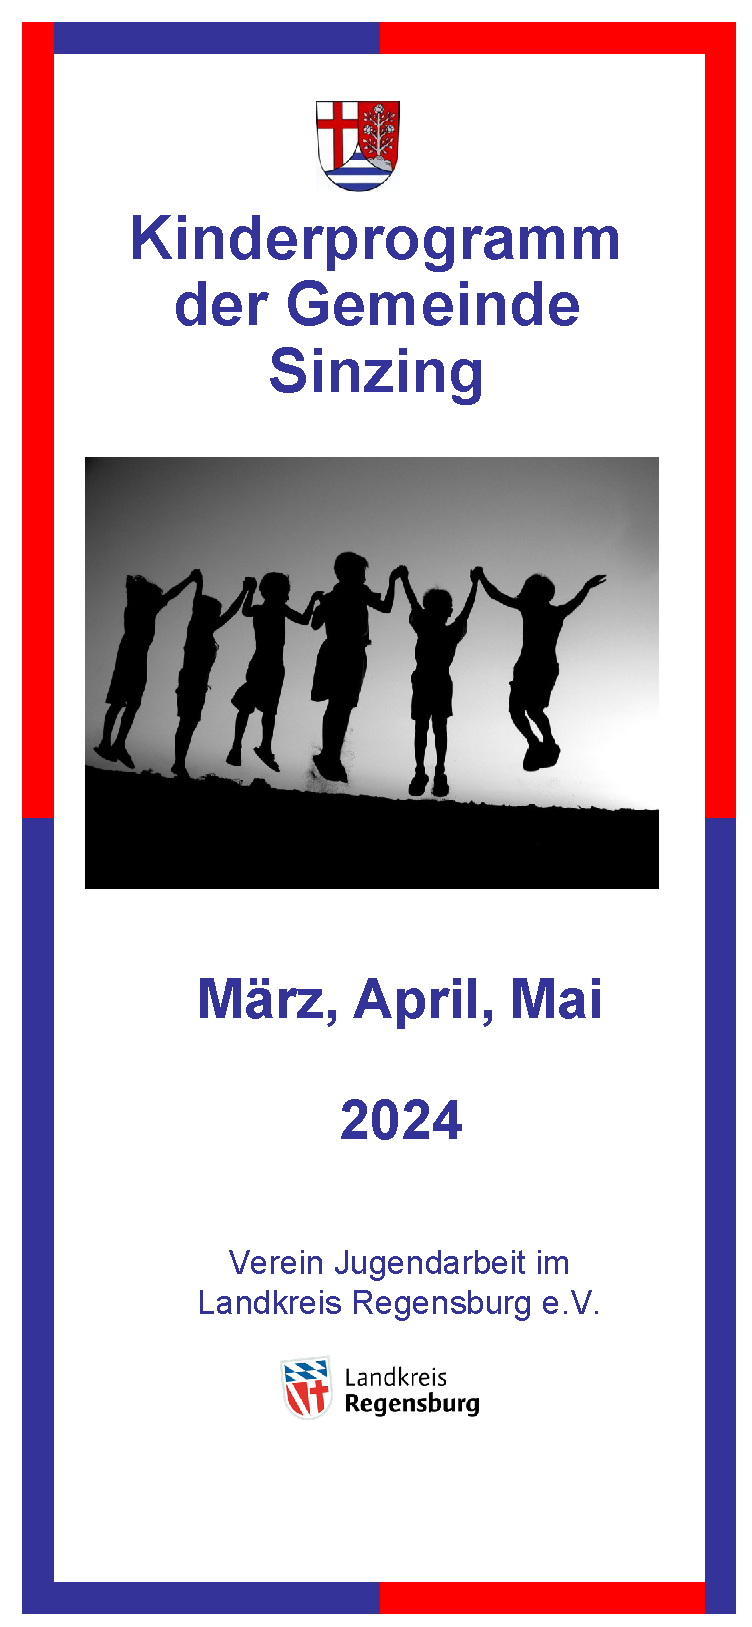 Kinderprogramm der Gemeinde Sinzing für März, April und Mai 2024!